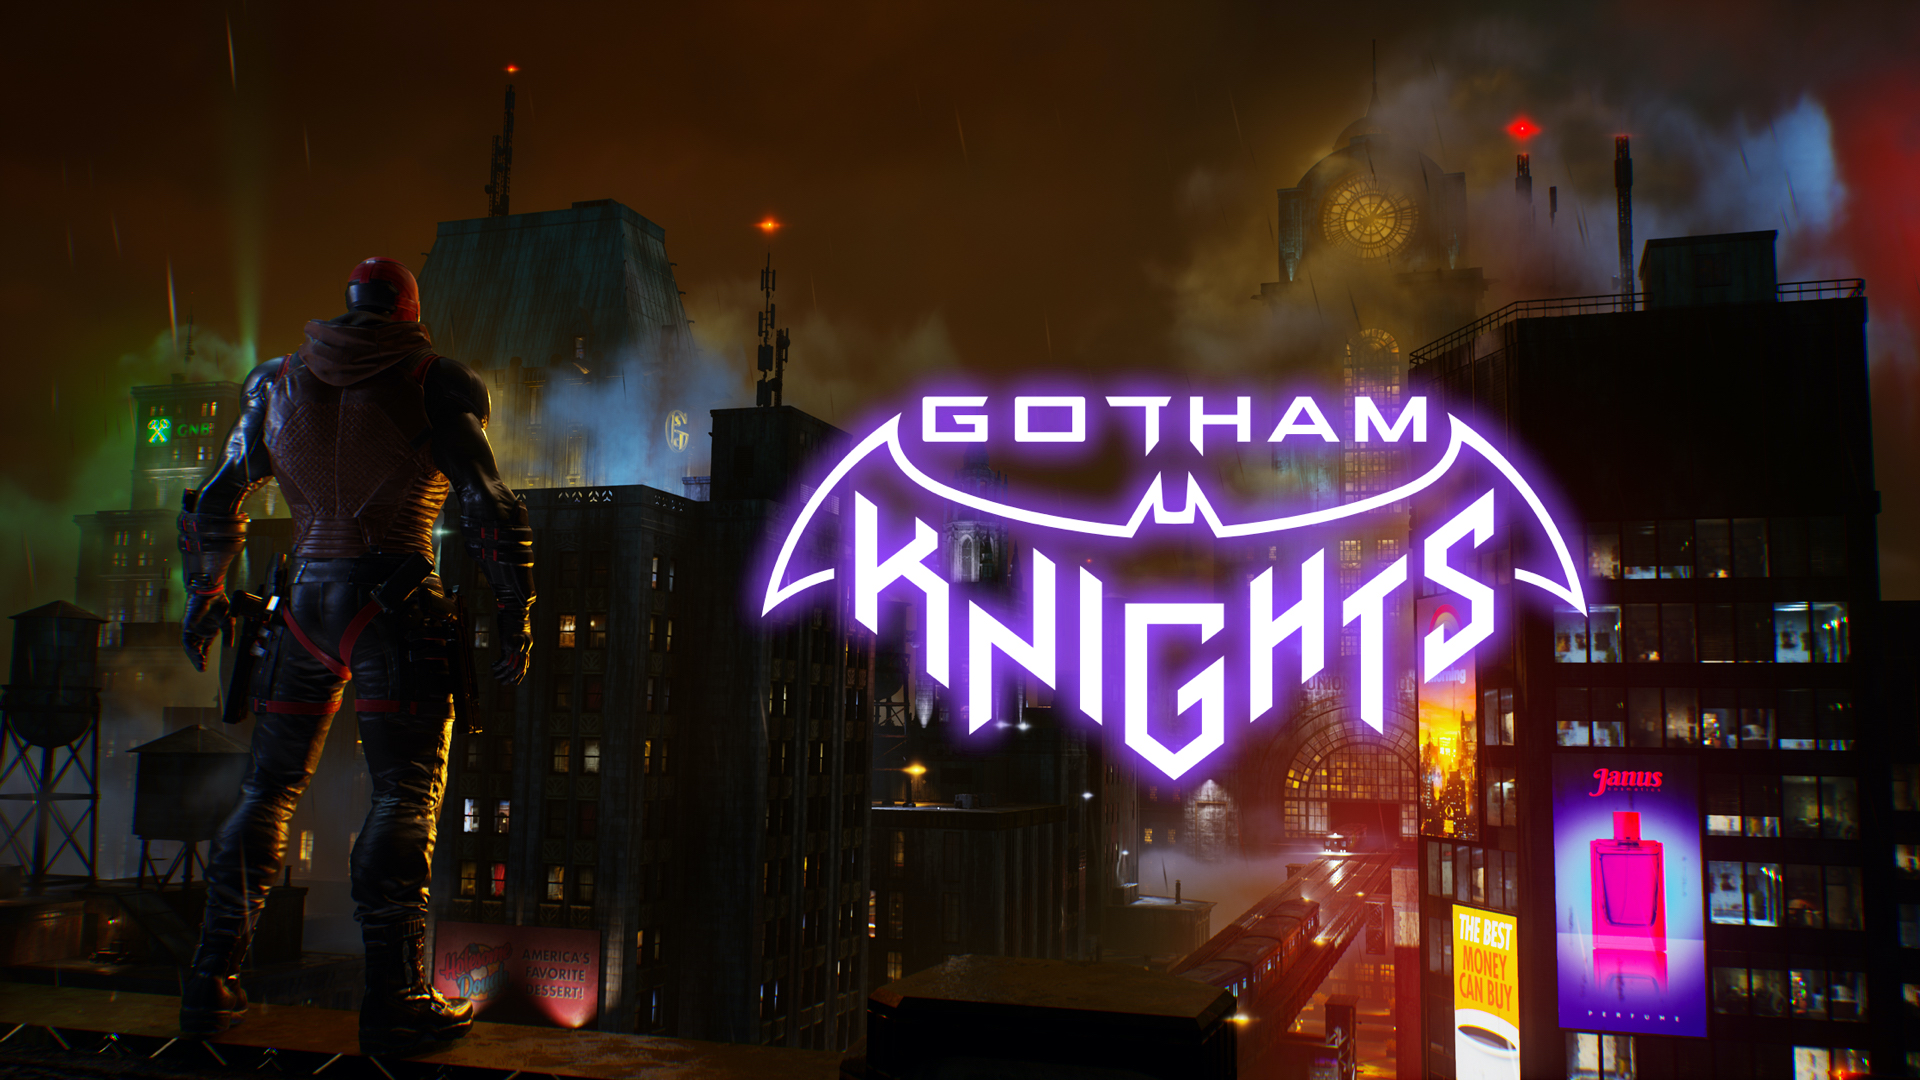 នាយកច្នៃប្រឌិតបាននិយាយថា Gotham Knights នឹងមិនមានកម្រិតណាមួយទេ។